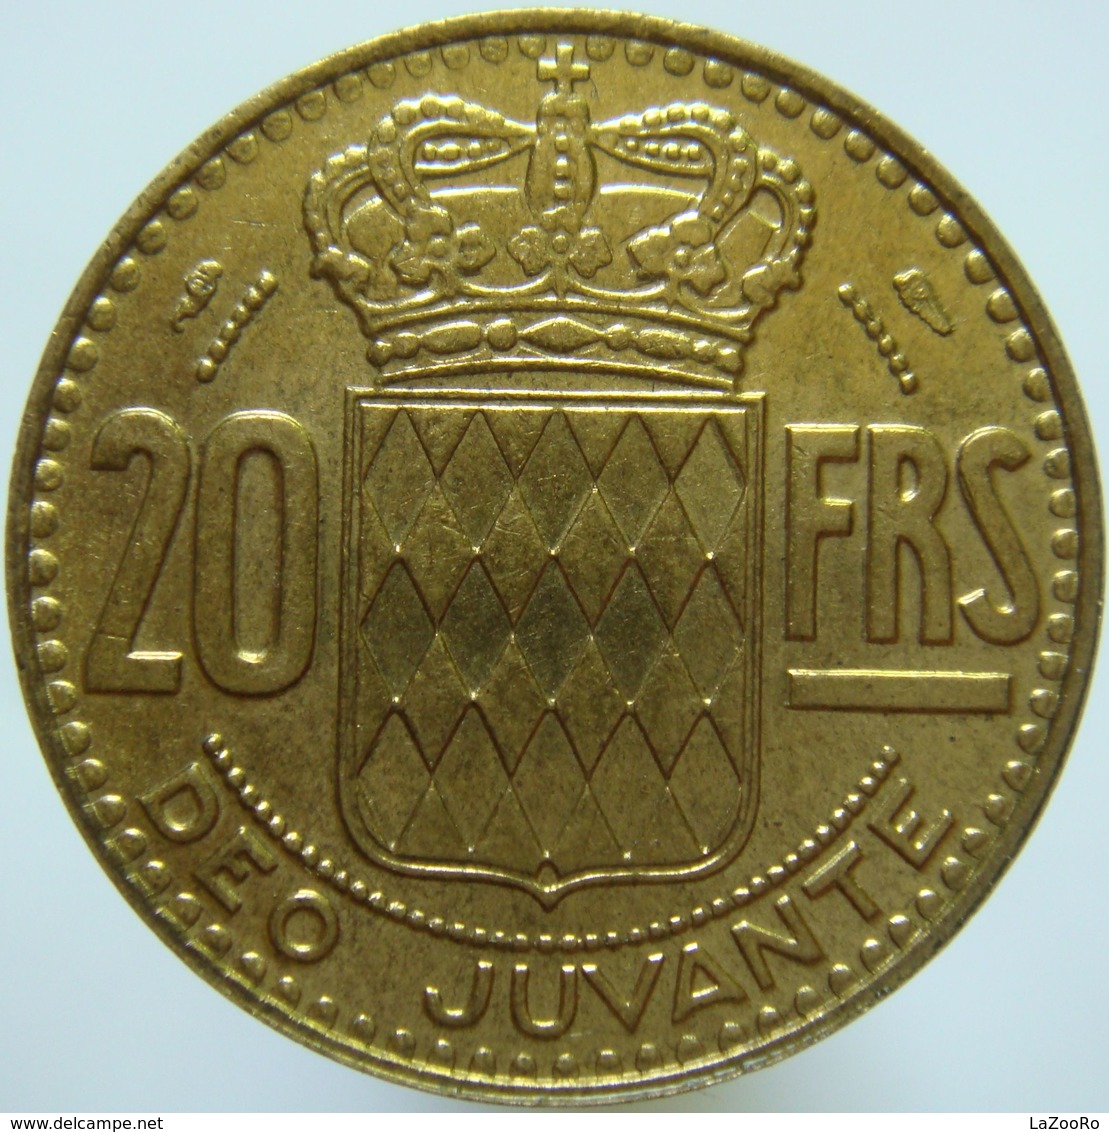 LaZooRo: Monaco 20 Francs 1951 UNC - 1949-1956 Anciens Francs